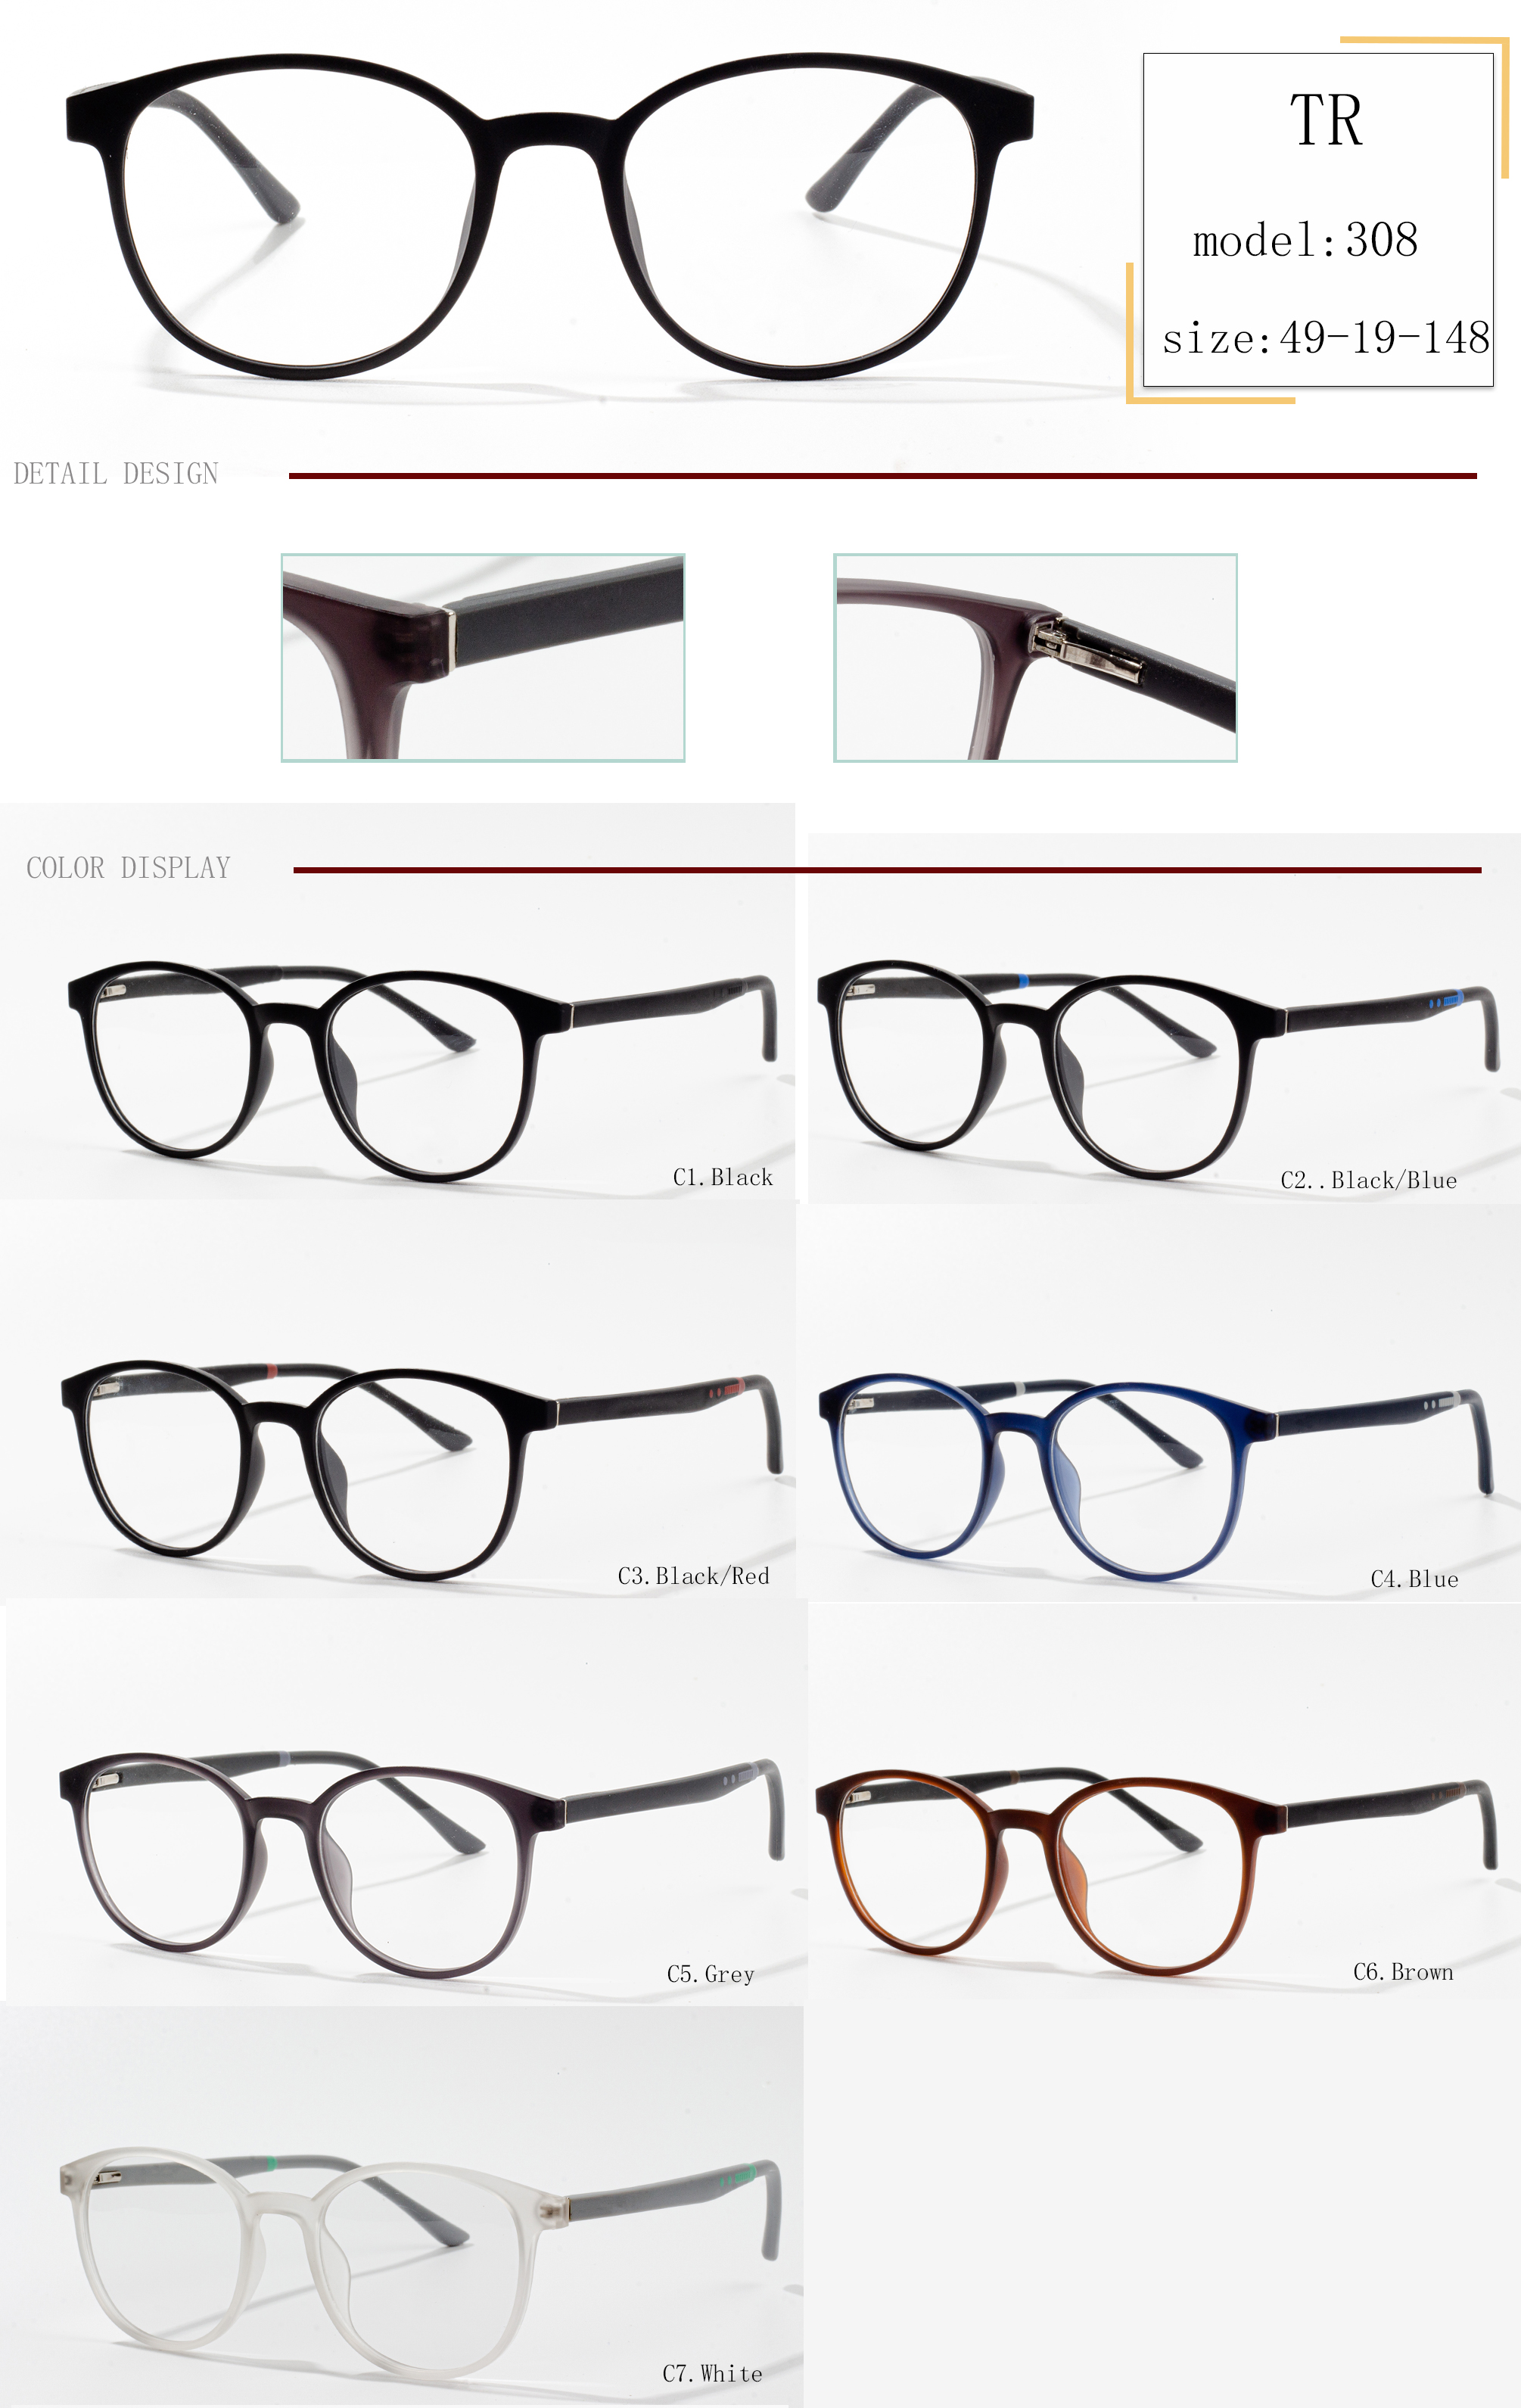 usong sports glasses frames